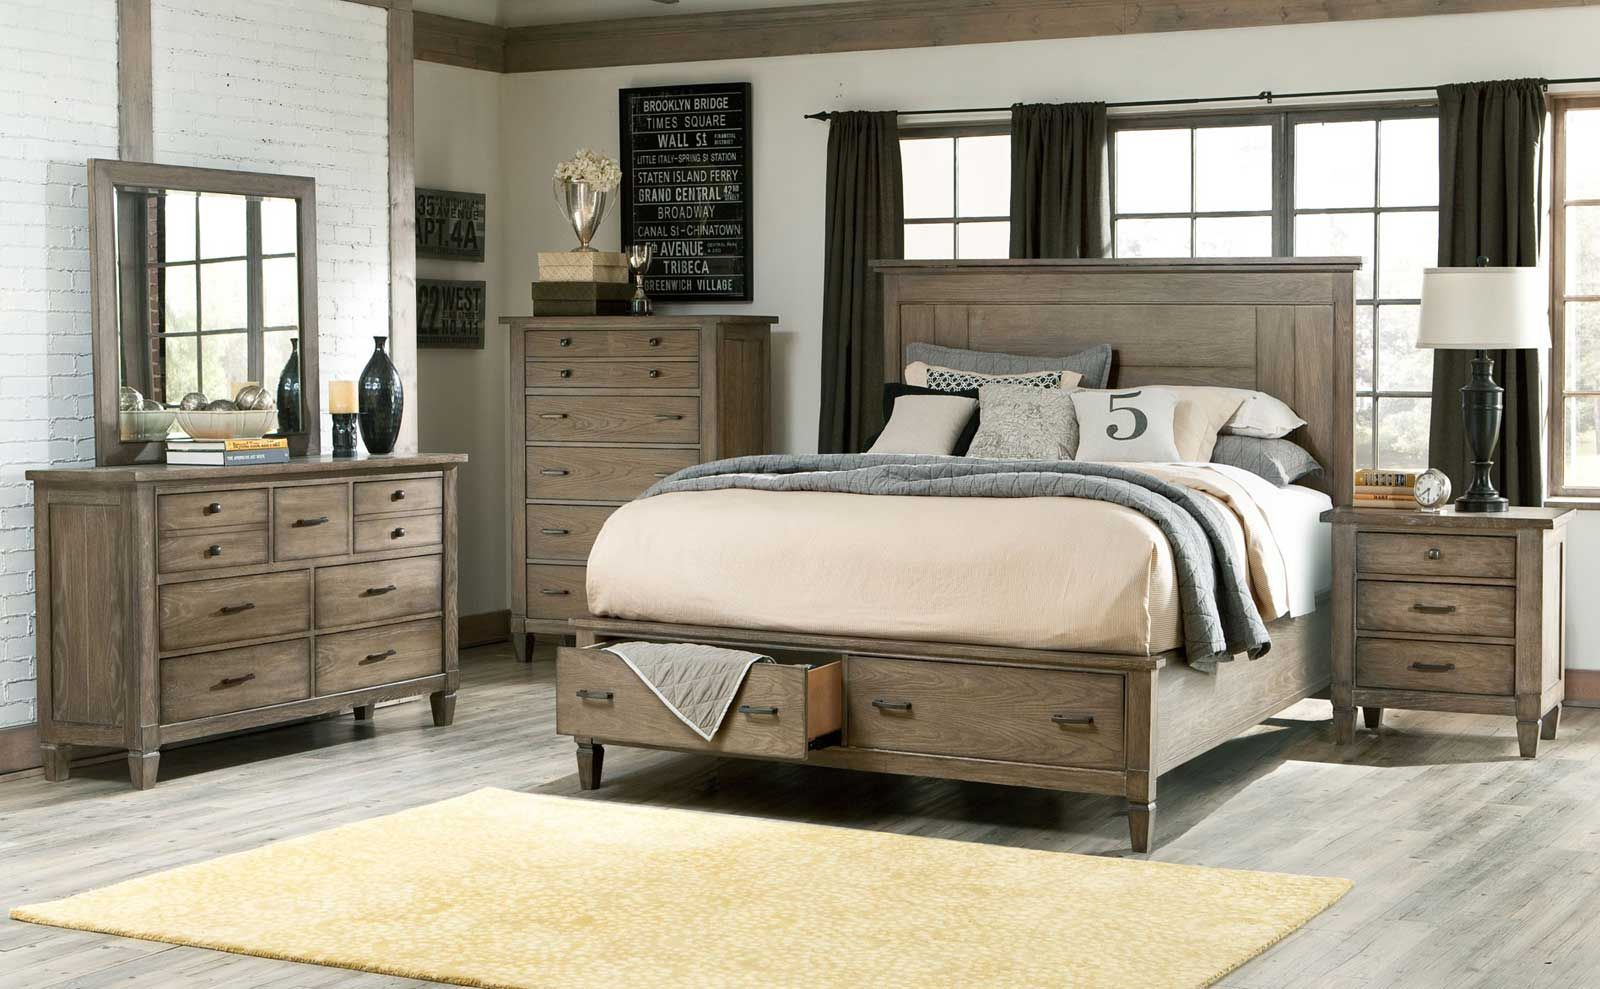 Image Result For Wood King Size Bedroom Sets Home Design Rustic regarding measurements 1600 X 989